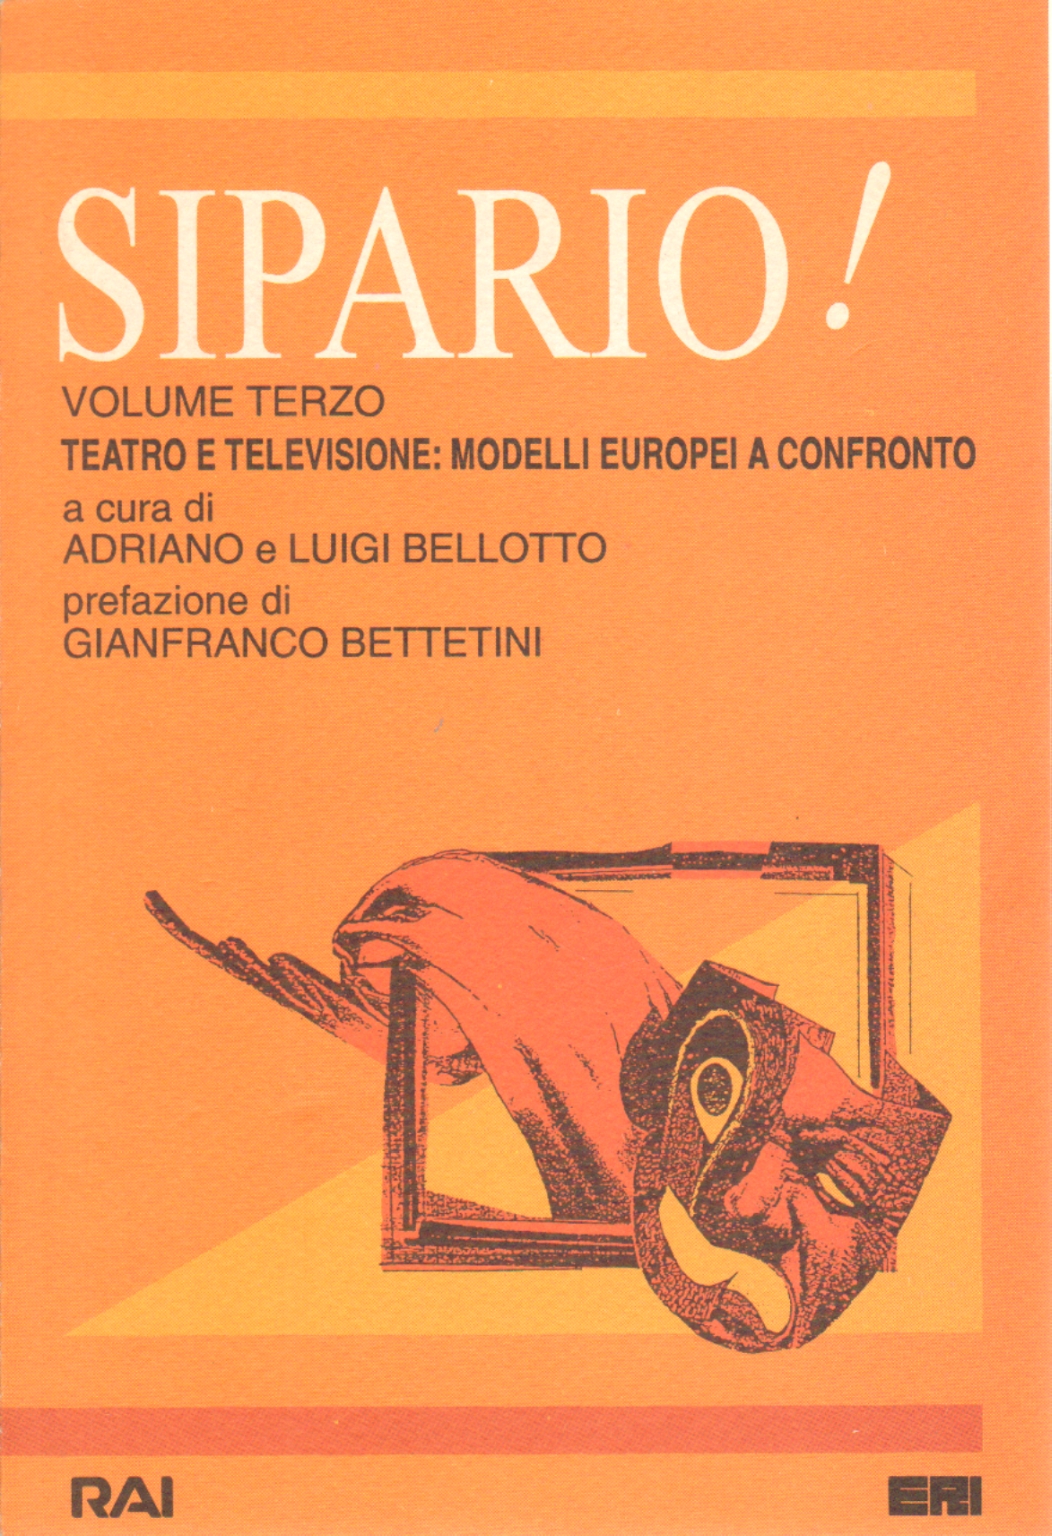 Sipario! volume terzo, Adriano Bellotto Luigi Bellotto,Sipario! Teatro e televisione: modelli e